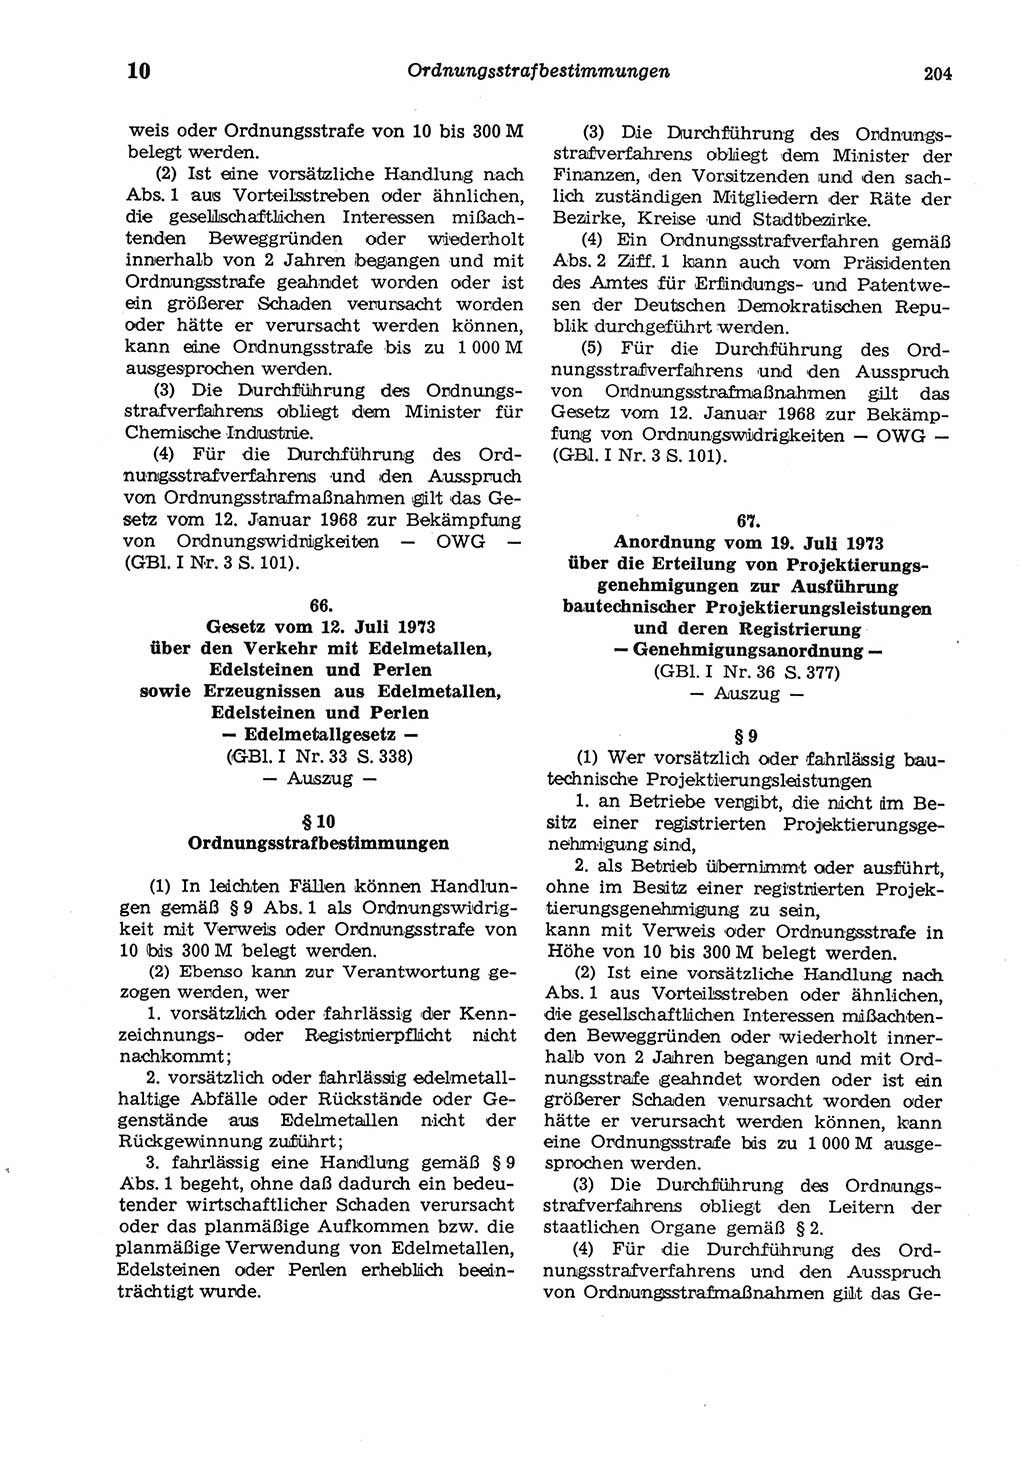 Strafgesetzbuch (StGB) der Deutschen Demokratischen Republik (DDR) und angrenzende Gesetze und Bestimmungen 1975, Seite 204 (StGB DDR Ges. Best. 1975, S. 204)